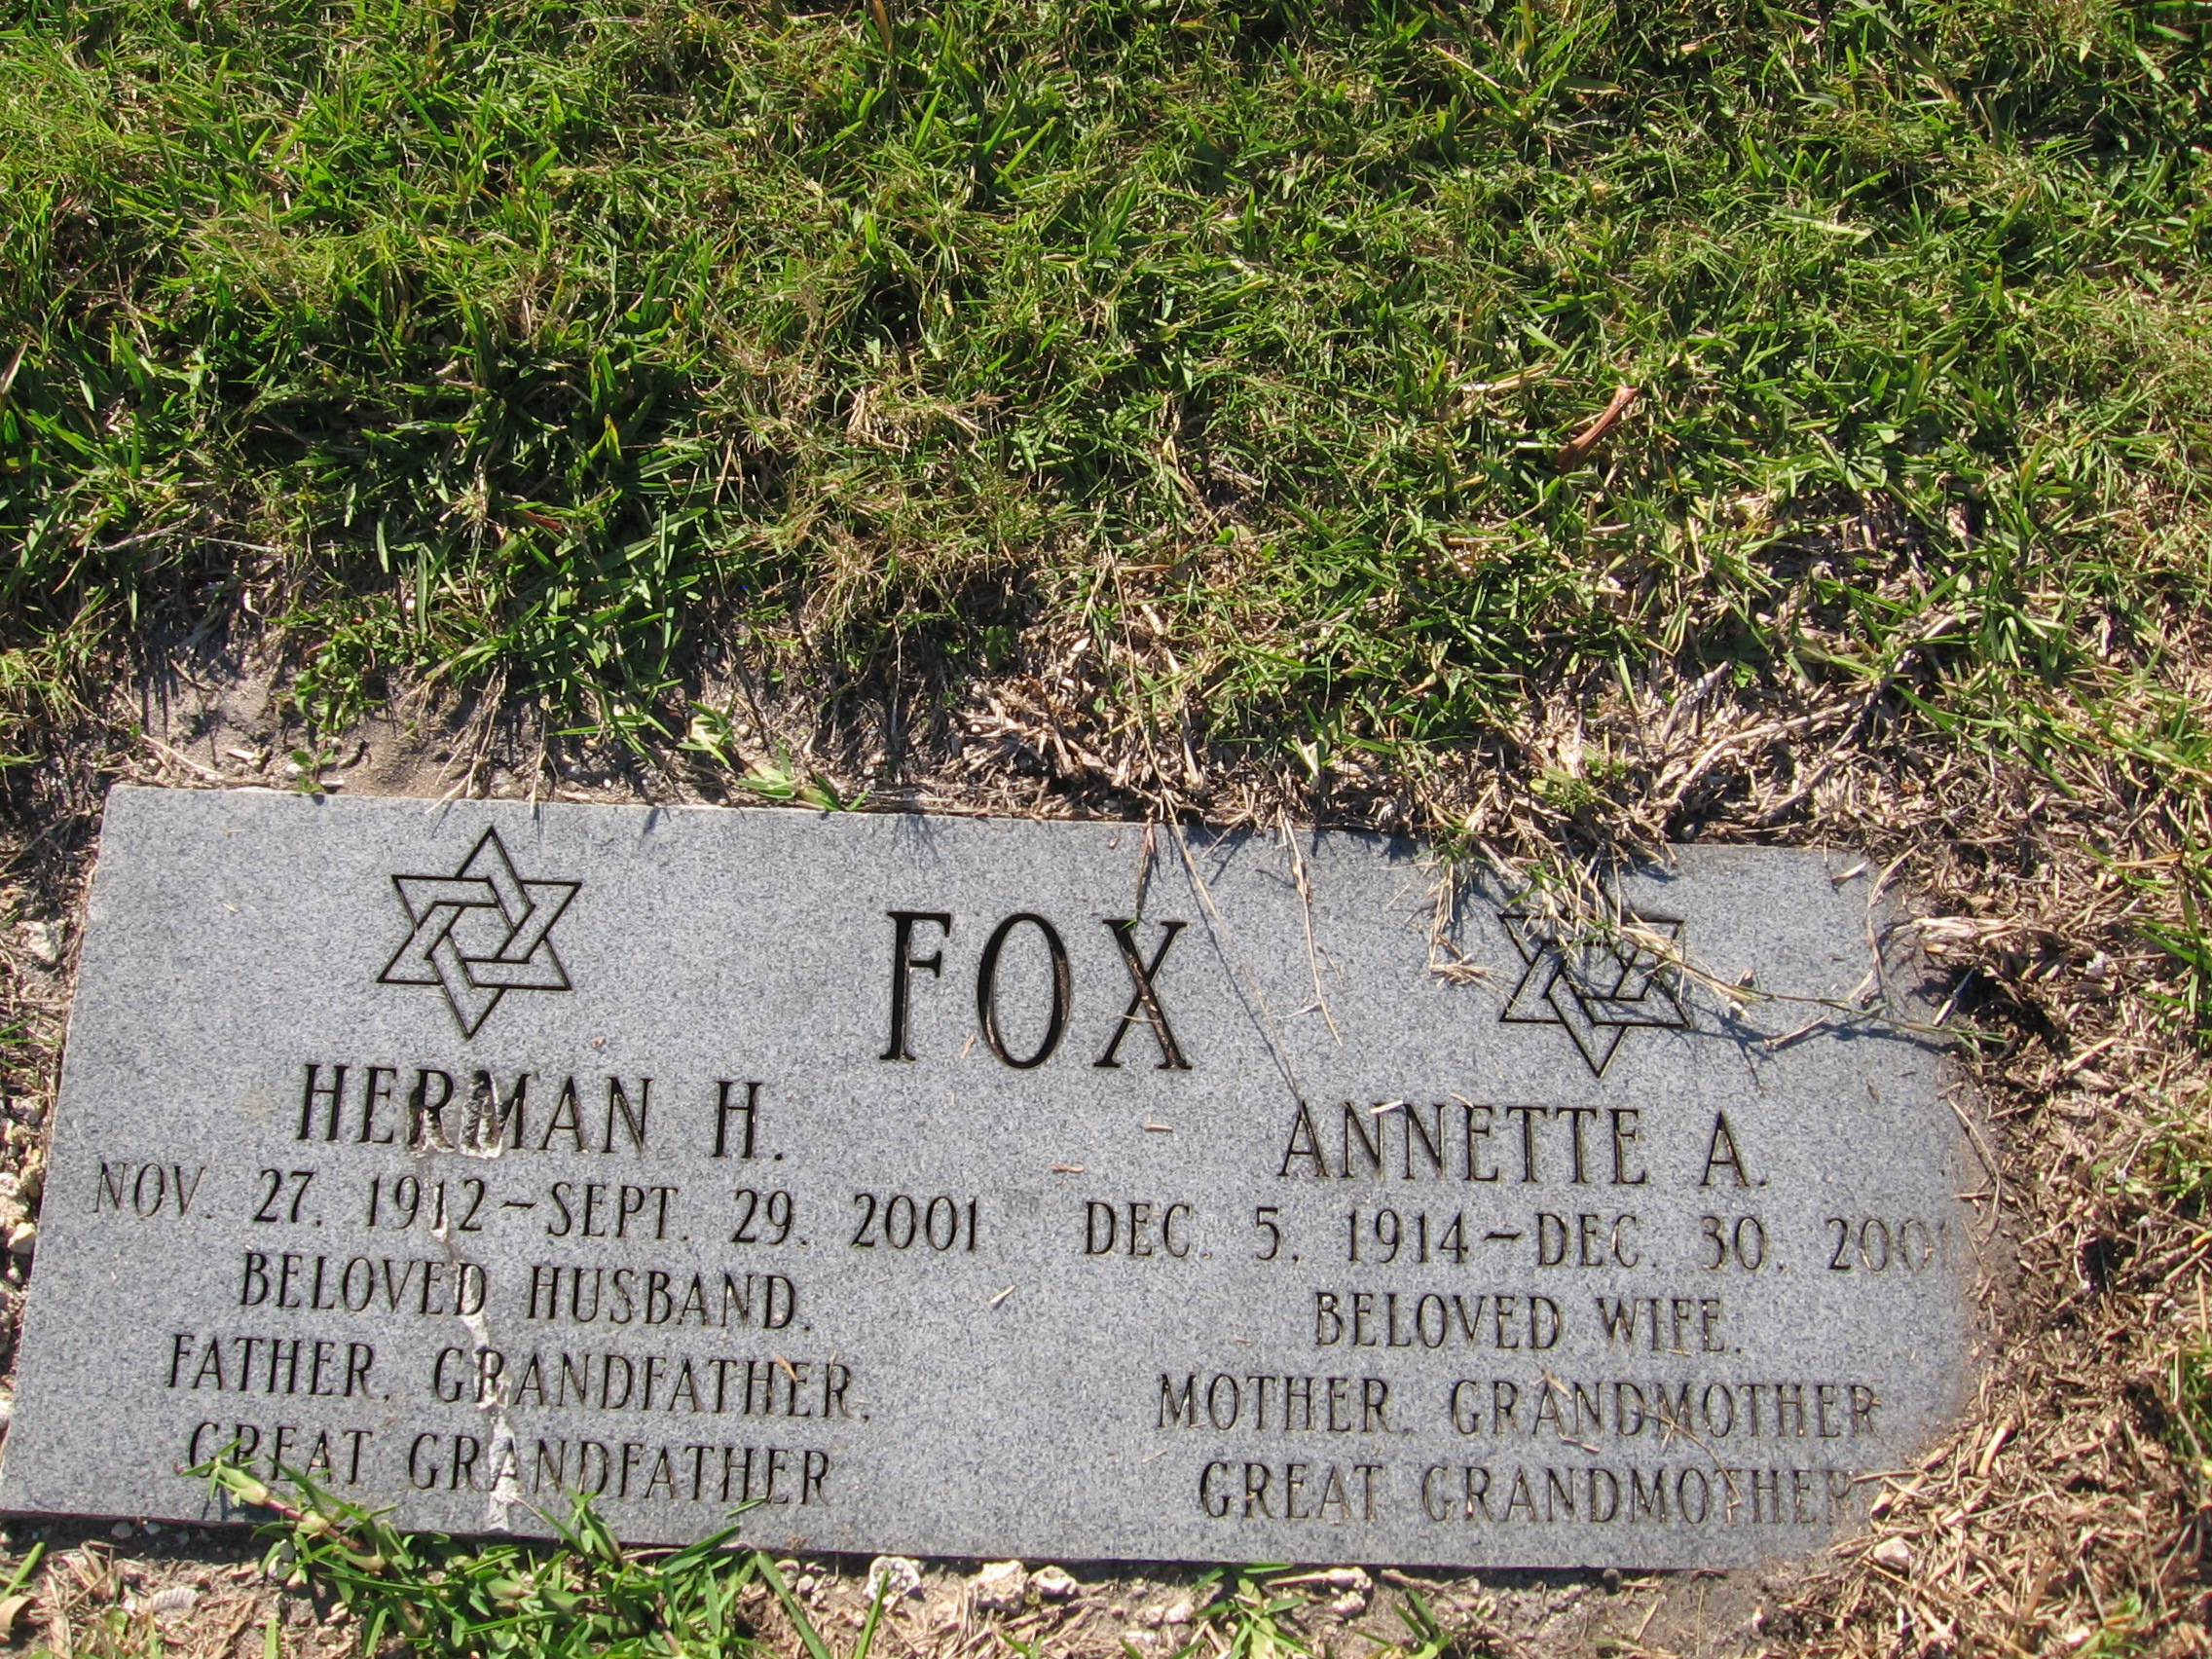 Annette A Fox